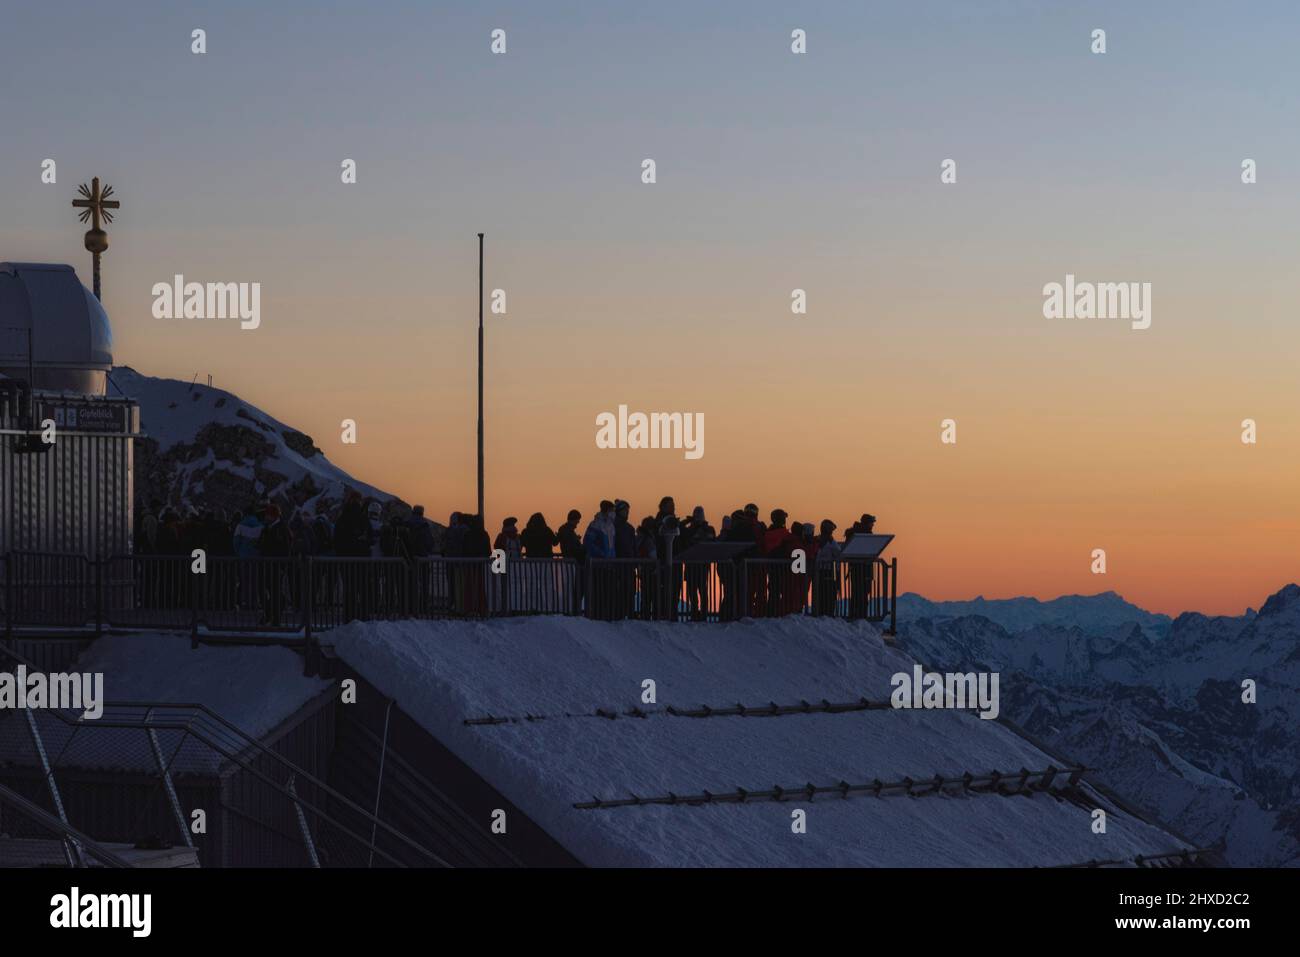 Mood mattutino su Zugspitze, alba sulla montagna più alta della Germania 'Top of Germany'. Fotografia di paesaggio con croce Zugspitze (4,88 m). I mattinieri aspettano che il sole salga. Foto Stock